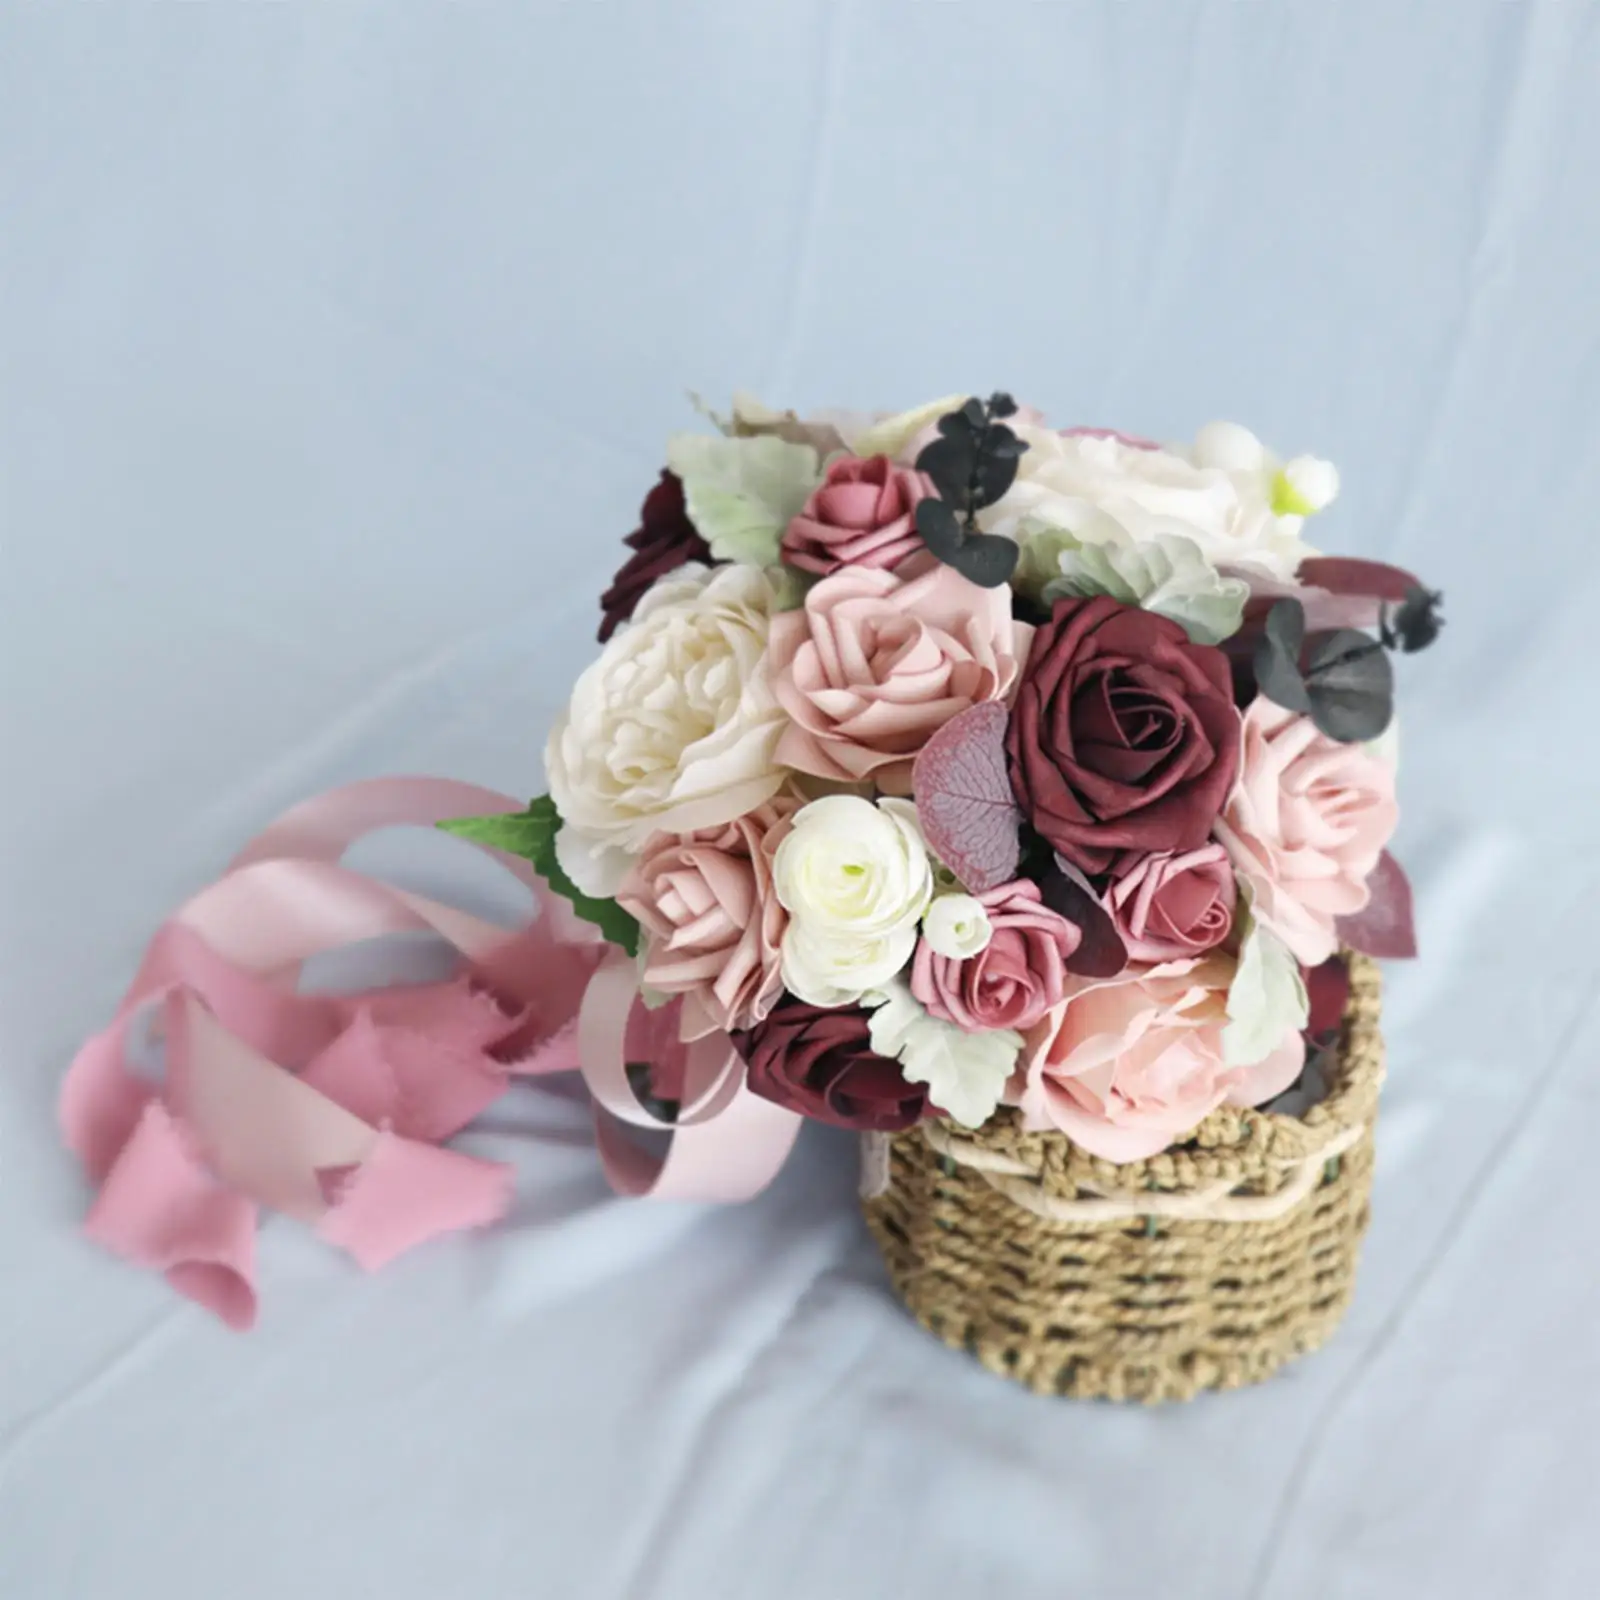 Romantic Bridal Bouquet Wedding Bouquet Artificial Flowers Silk Flowers